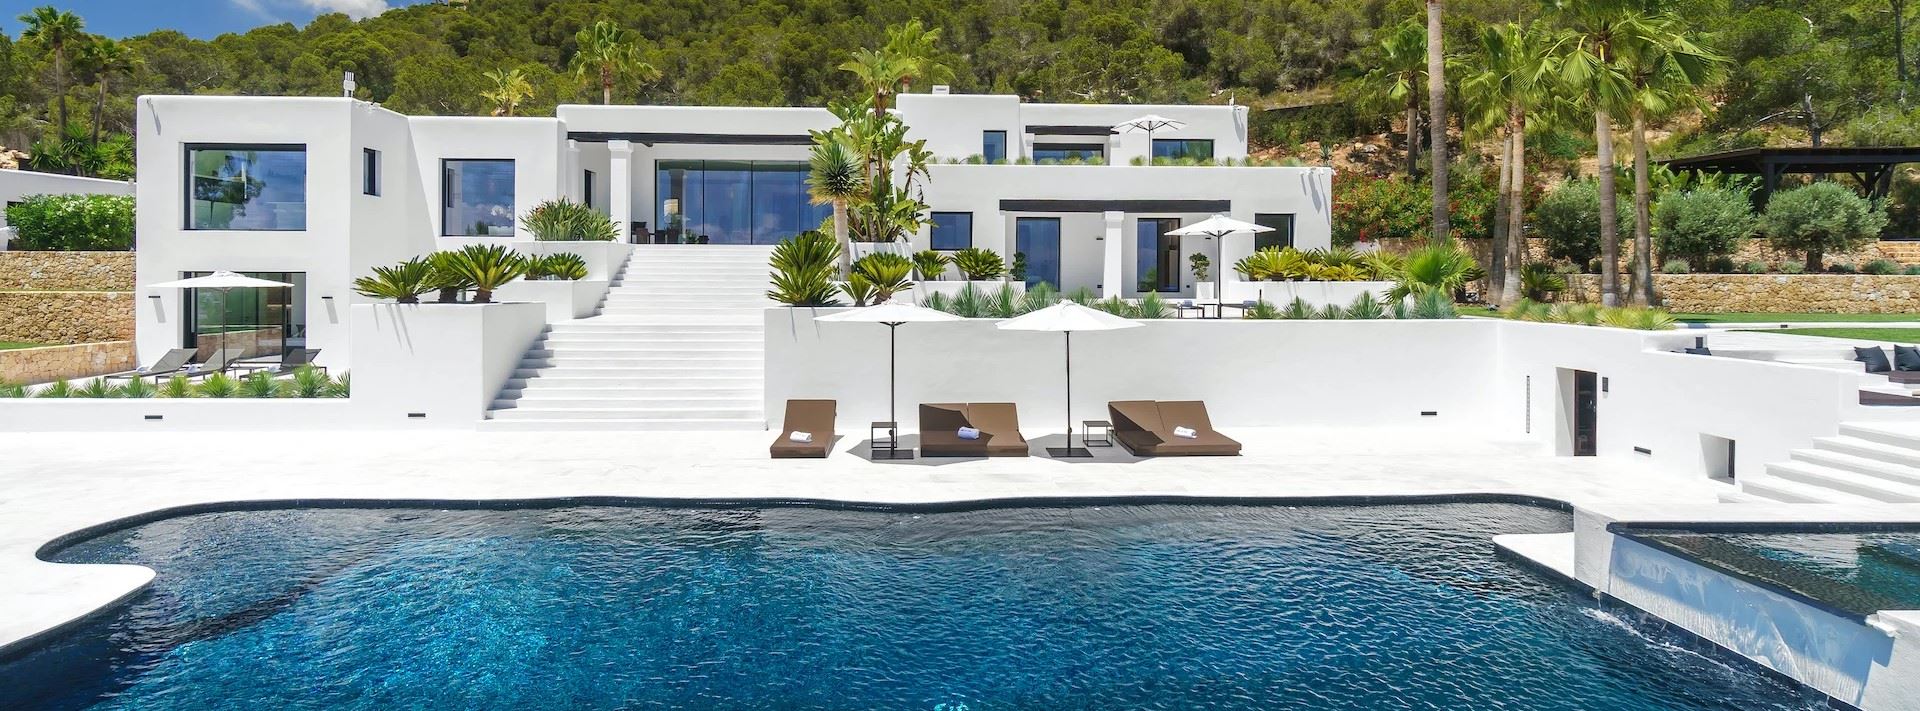 IR - Ibiza Real Estate